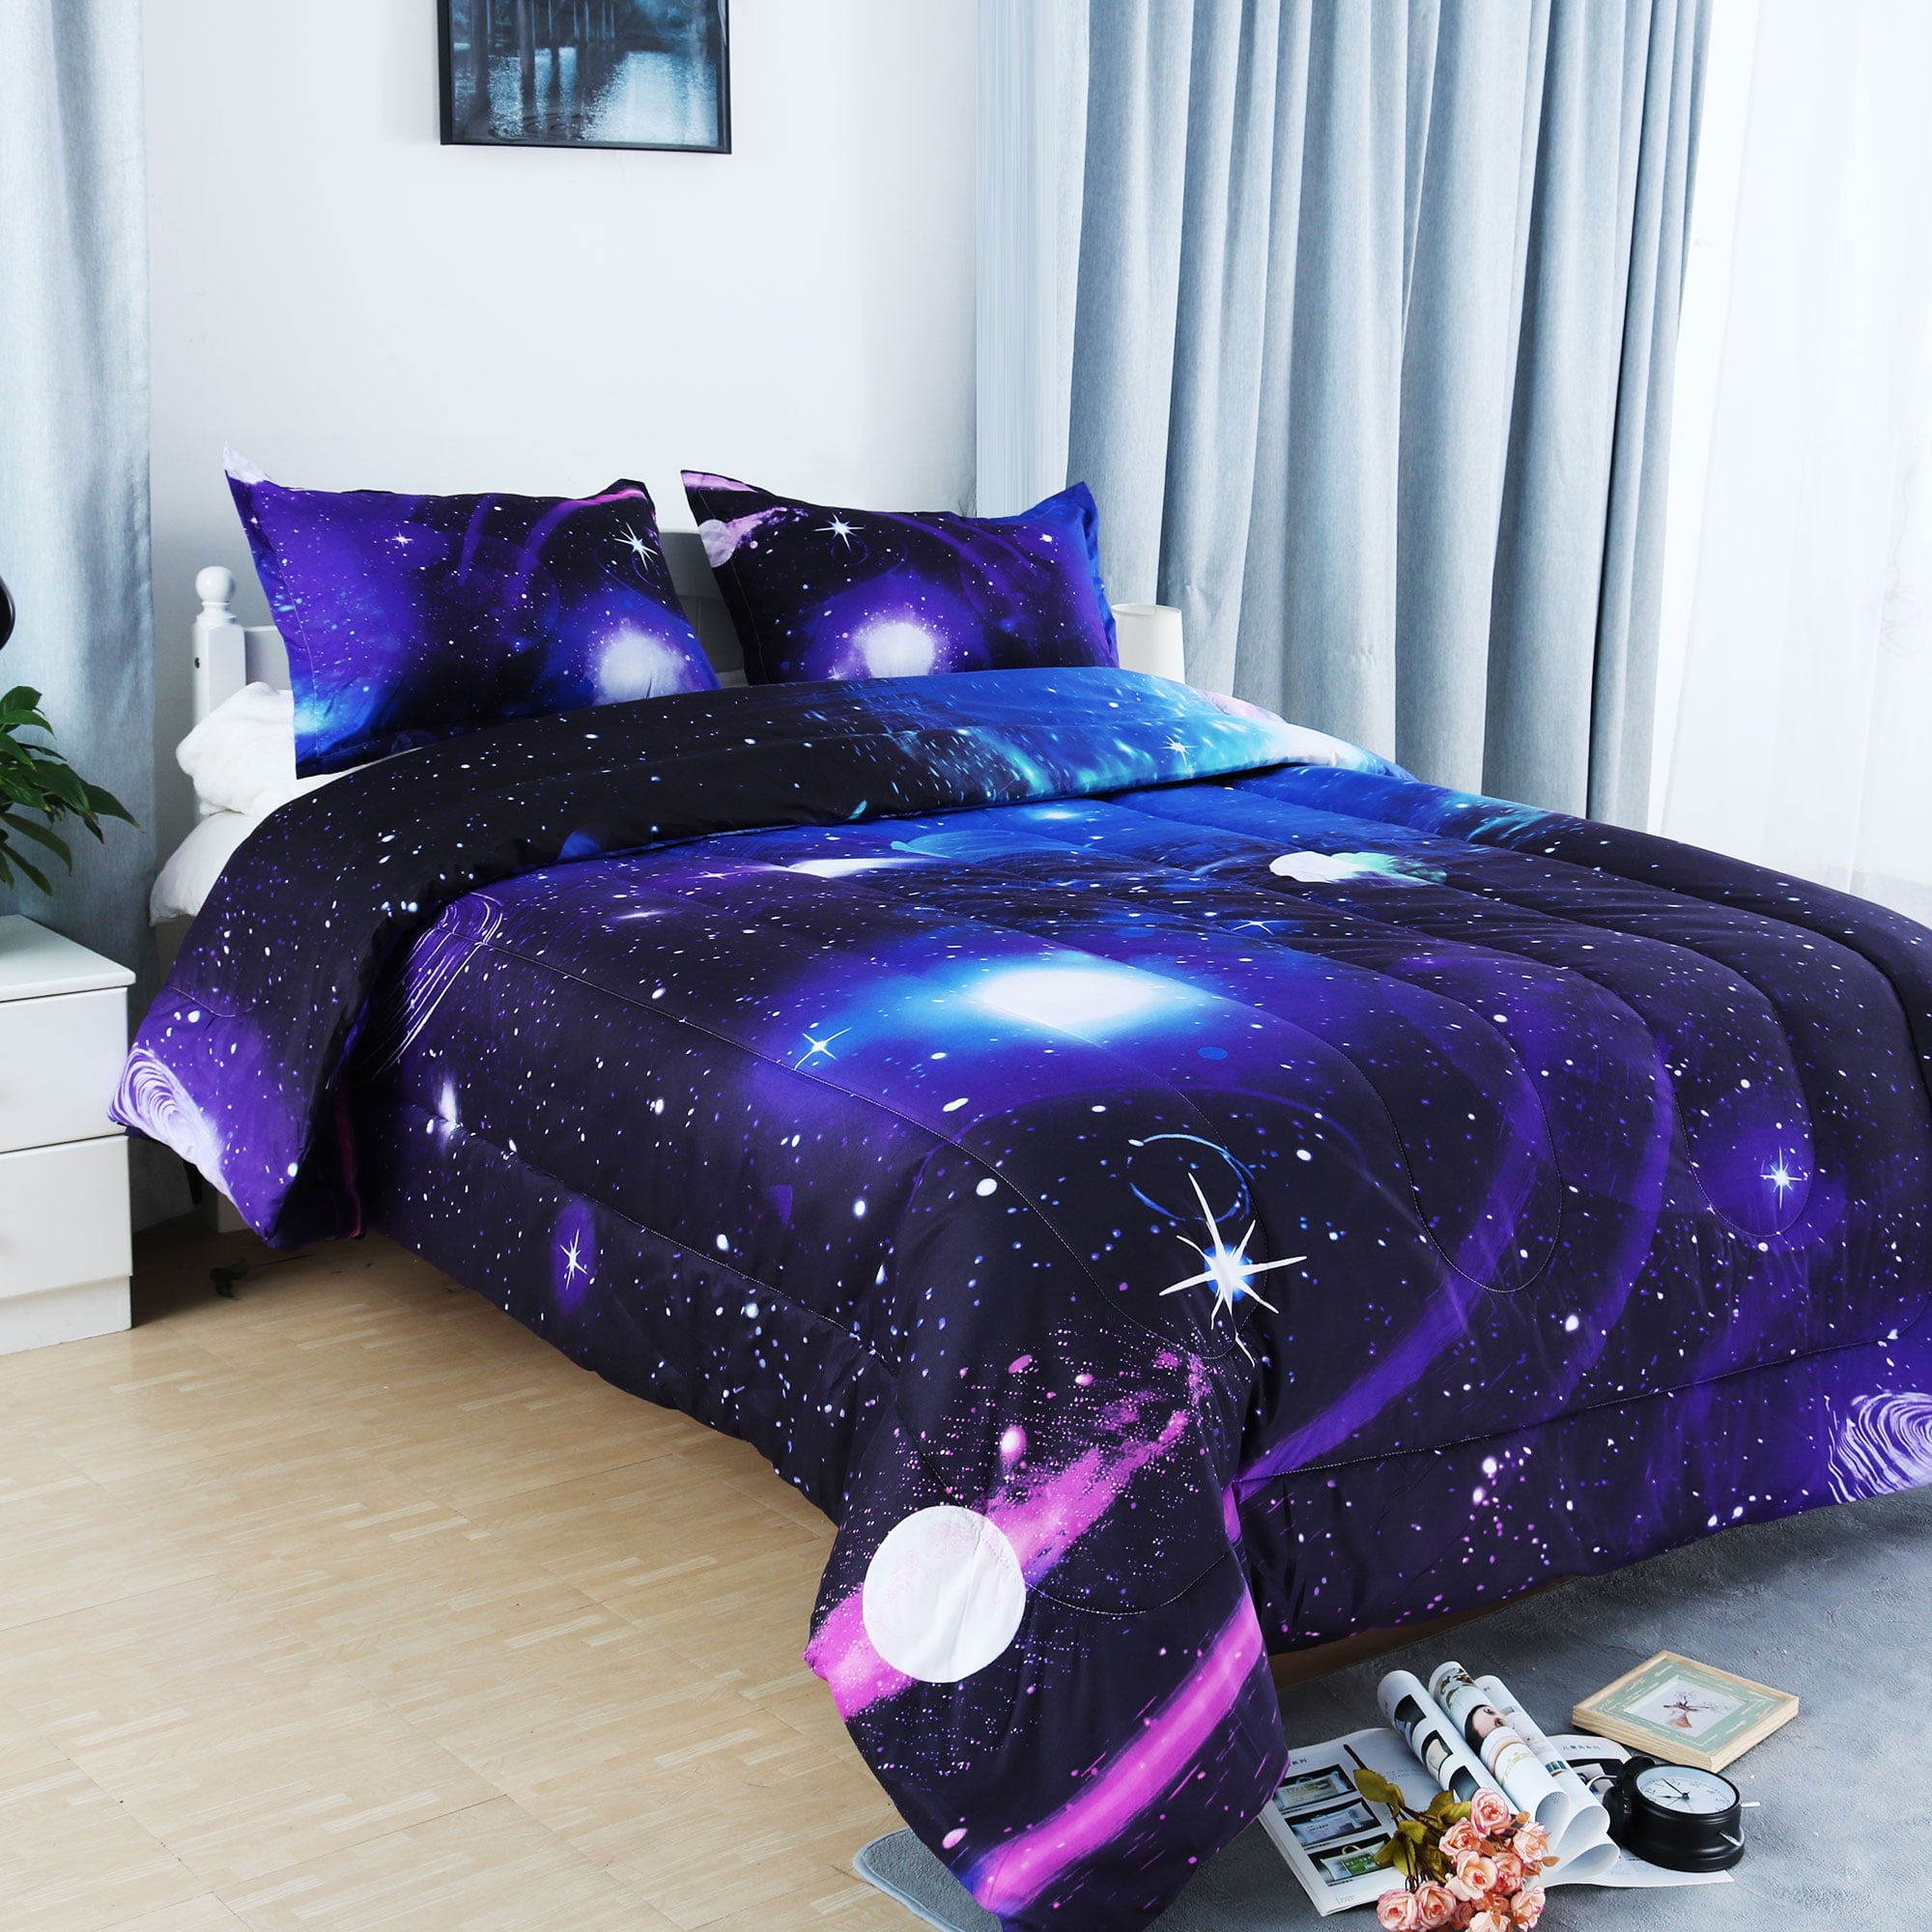 dark purple comforter queen